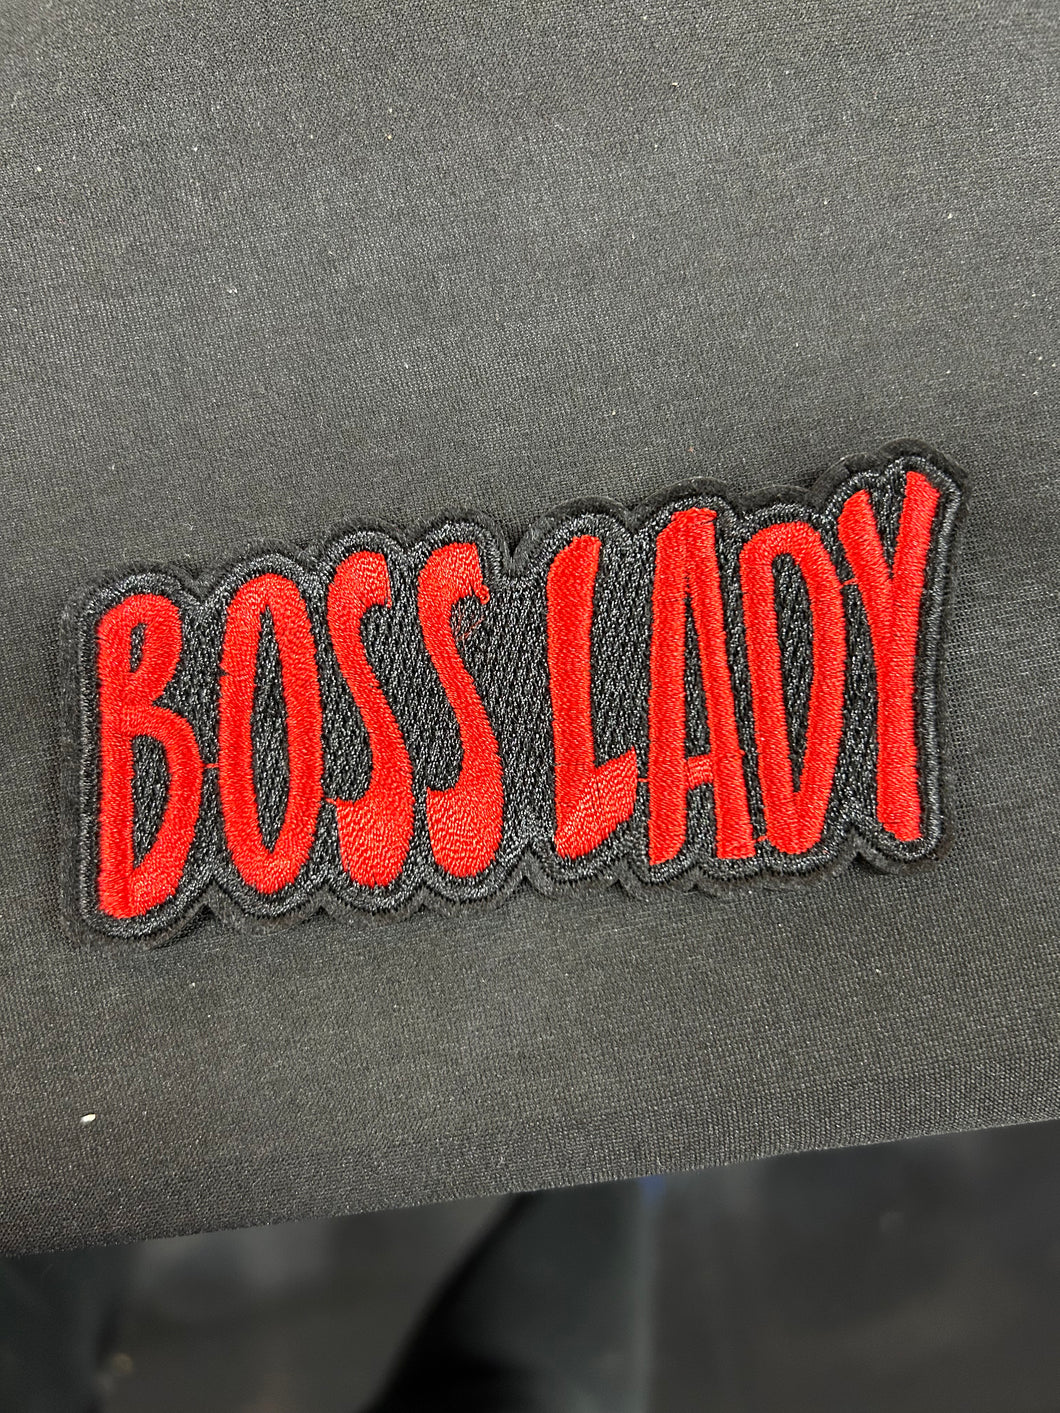 Boss lady